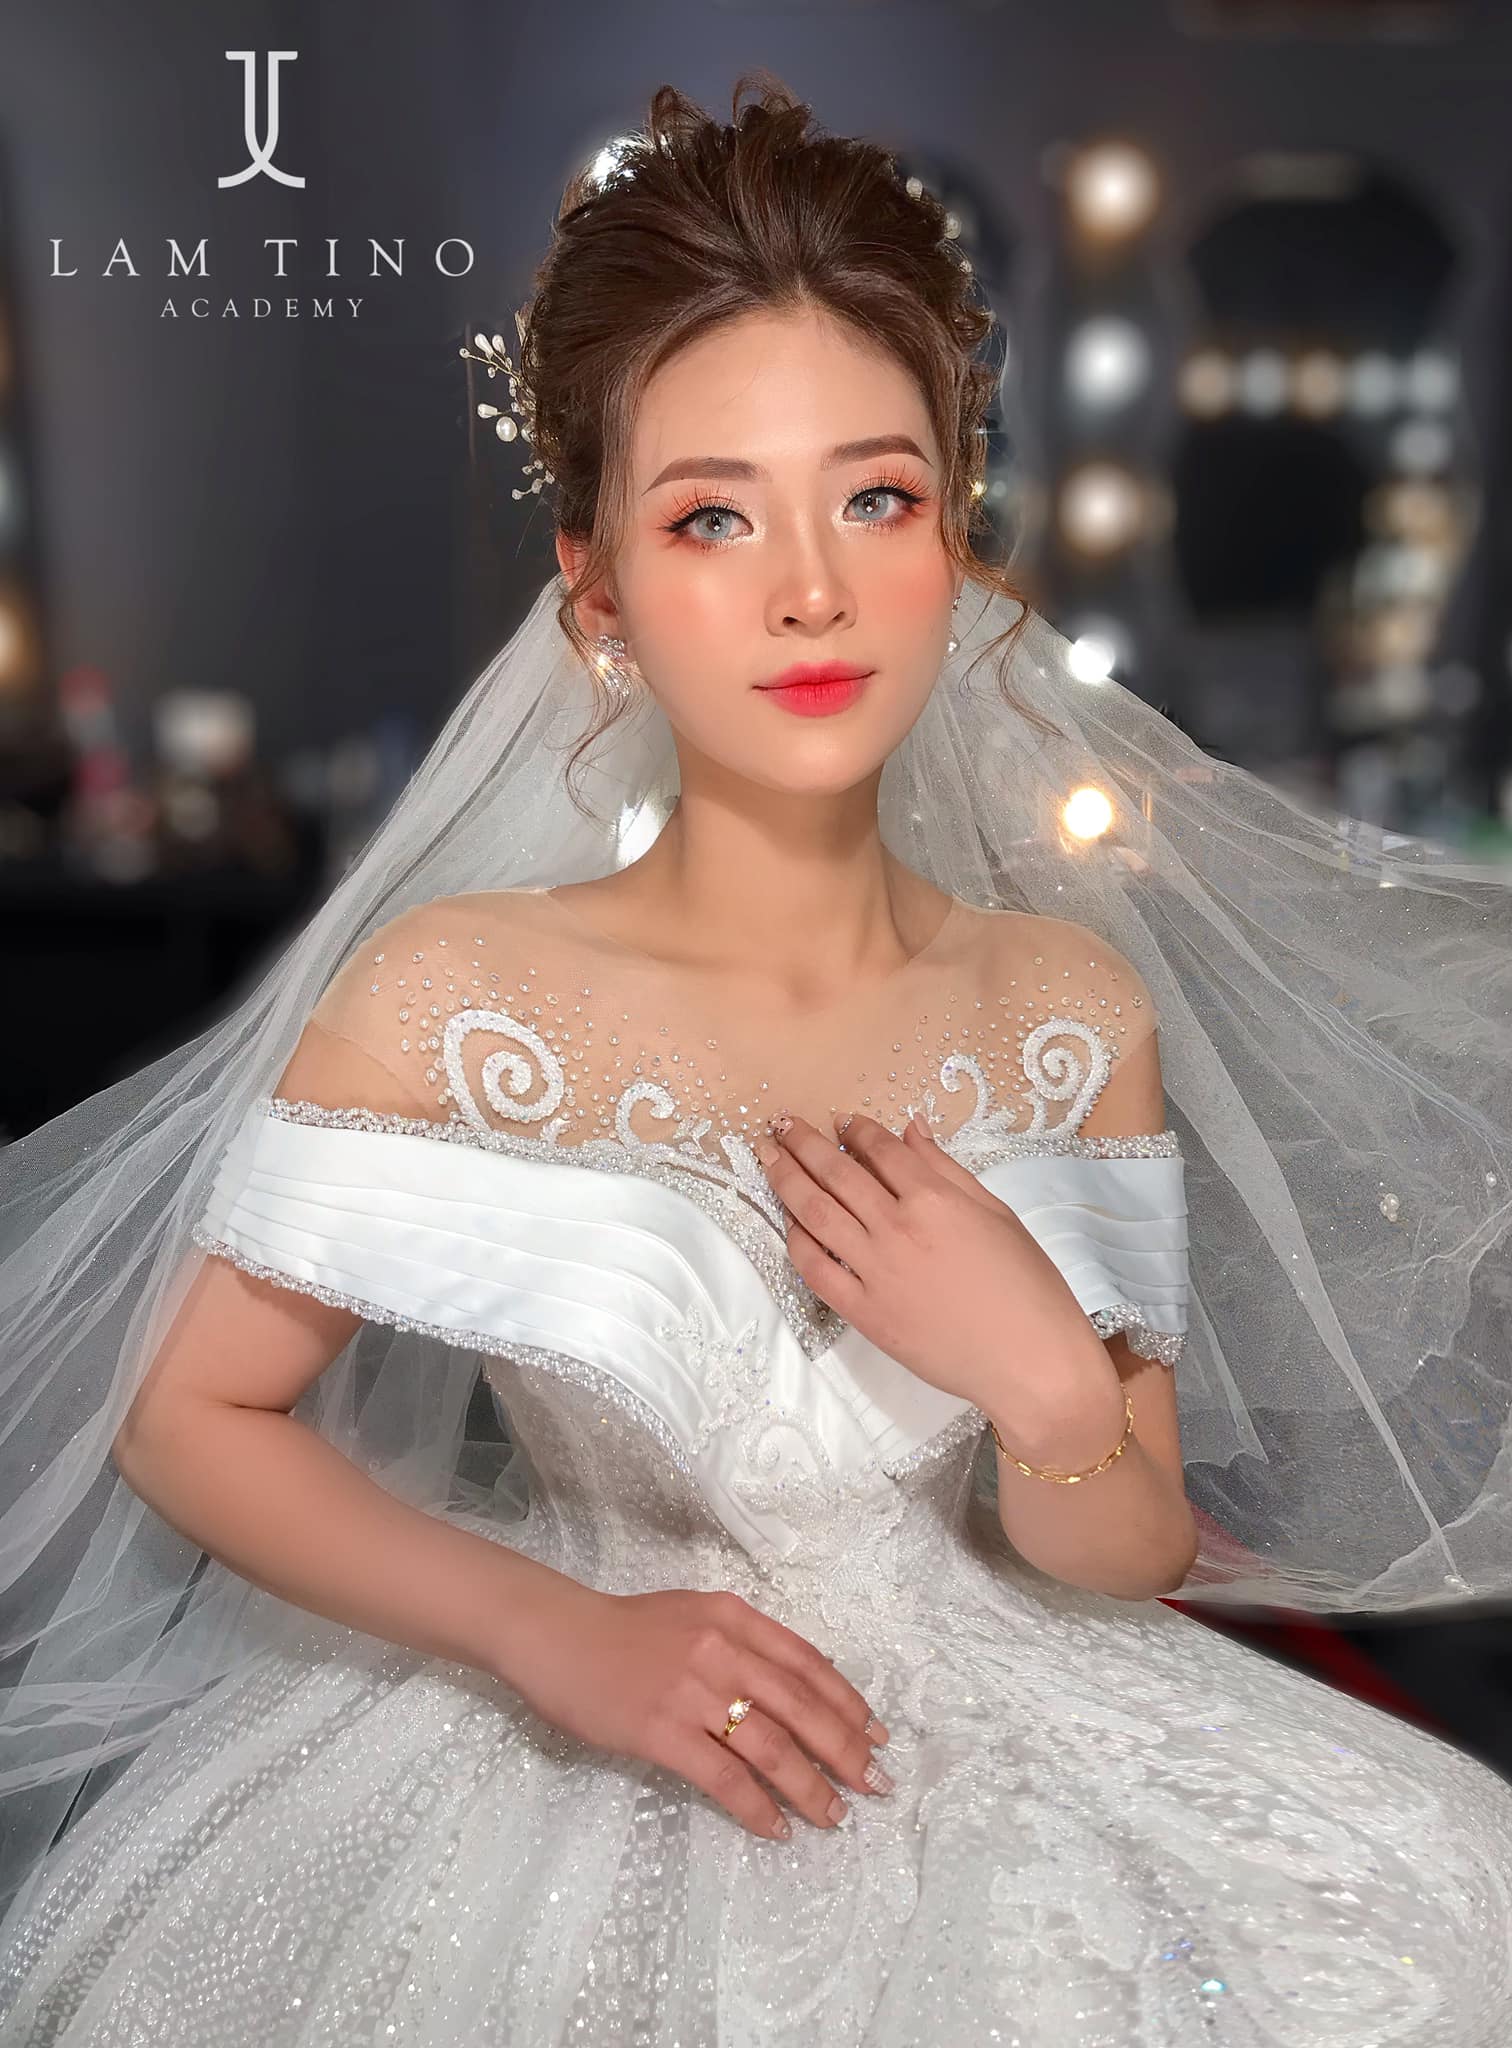 Lâm Tino Academy & Bridal ảnh 2